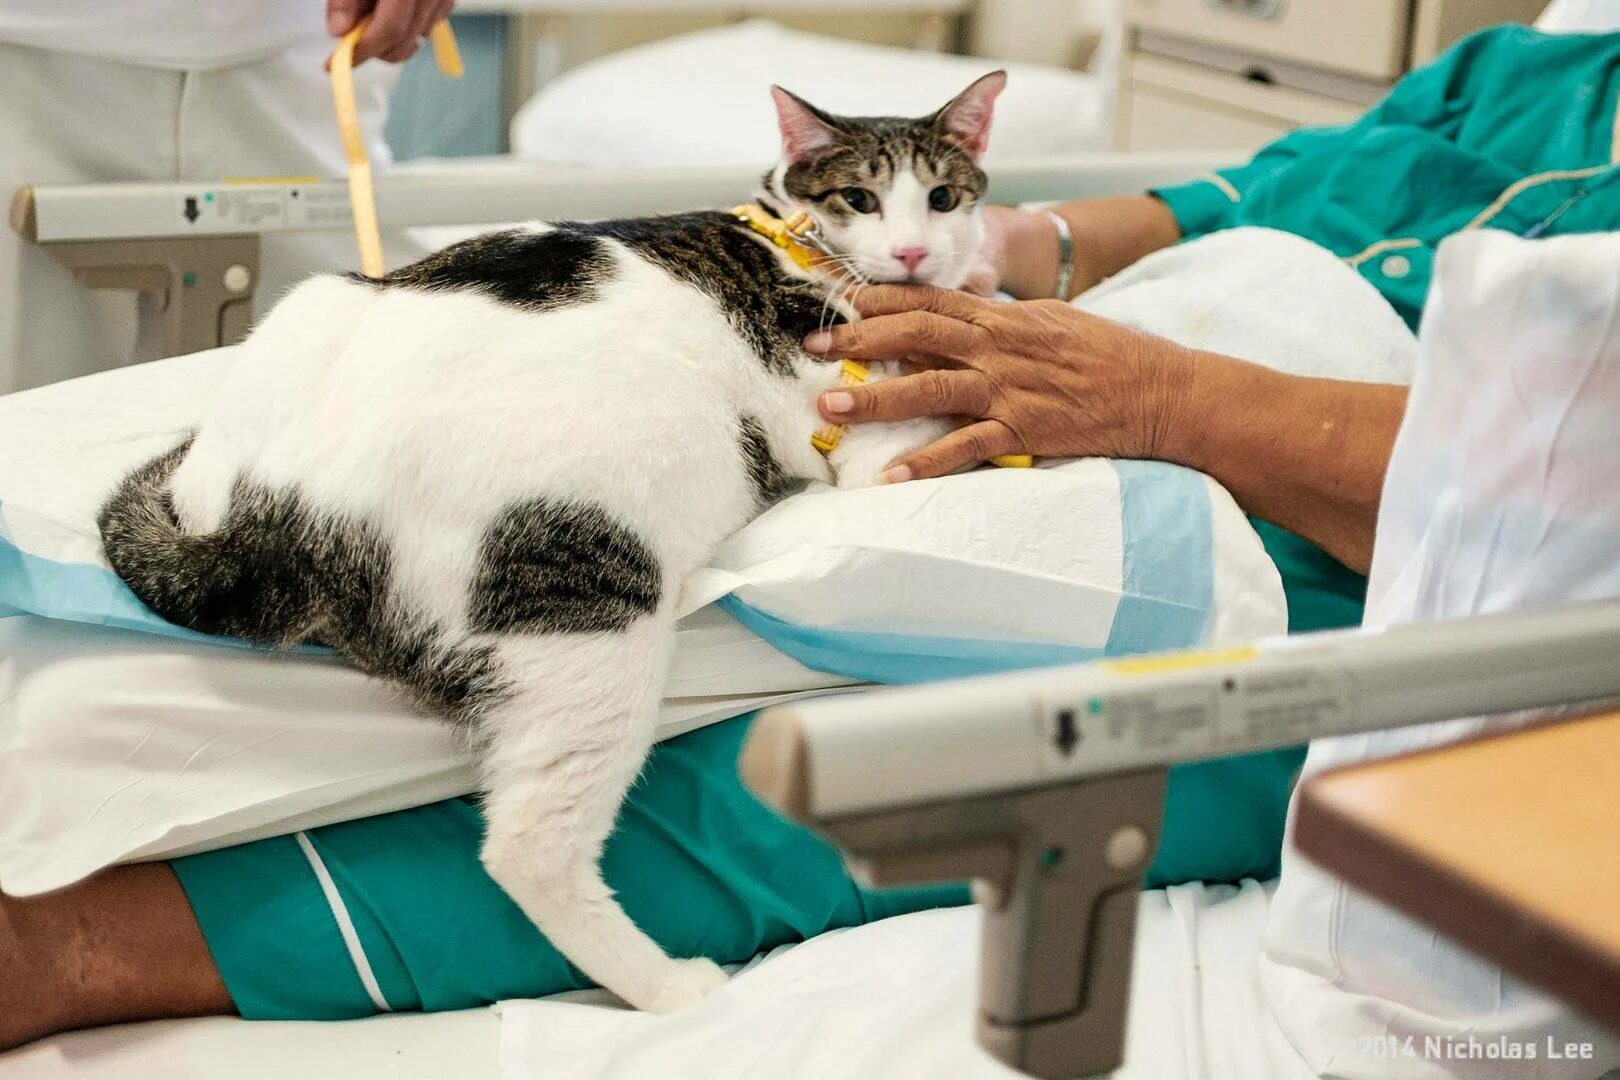 Лечат ли кошки людей. Терапия кошками. Фелинотерапия. Анималотерапия кошки. Кошки терапевты.